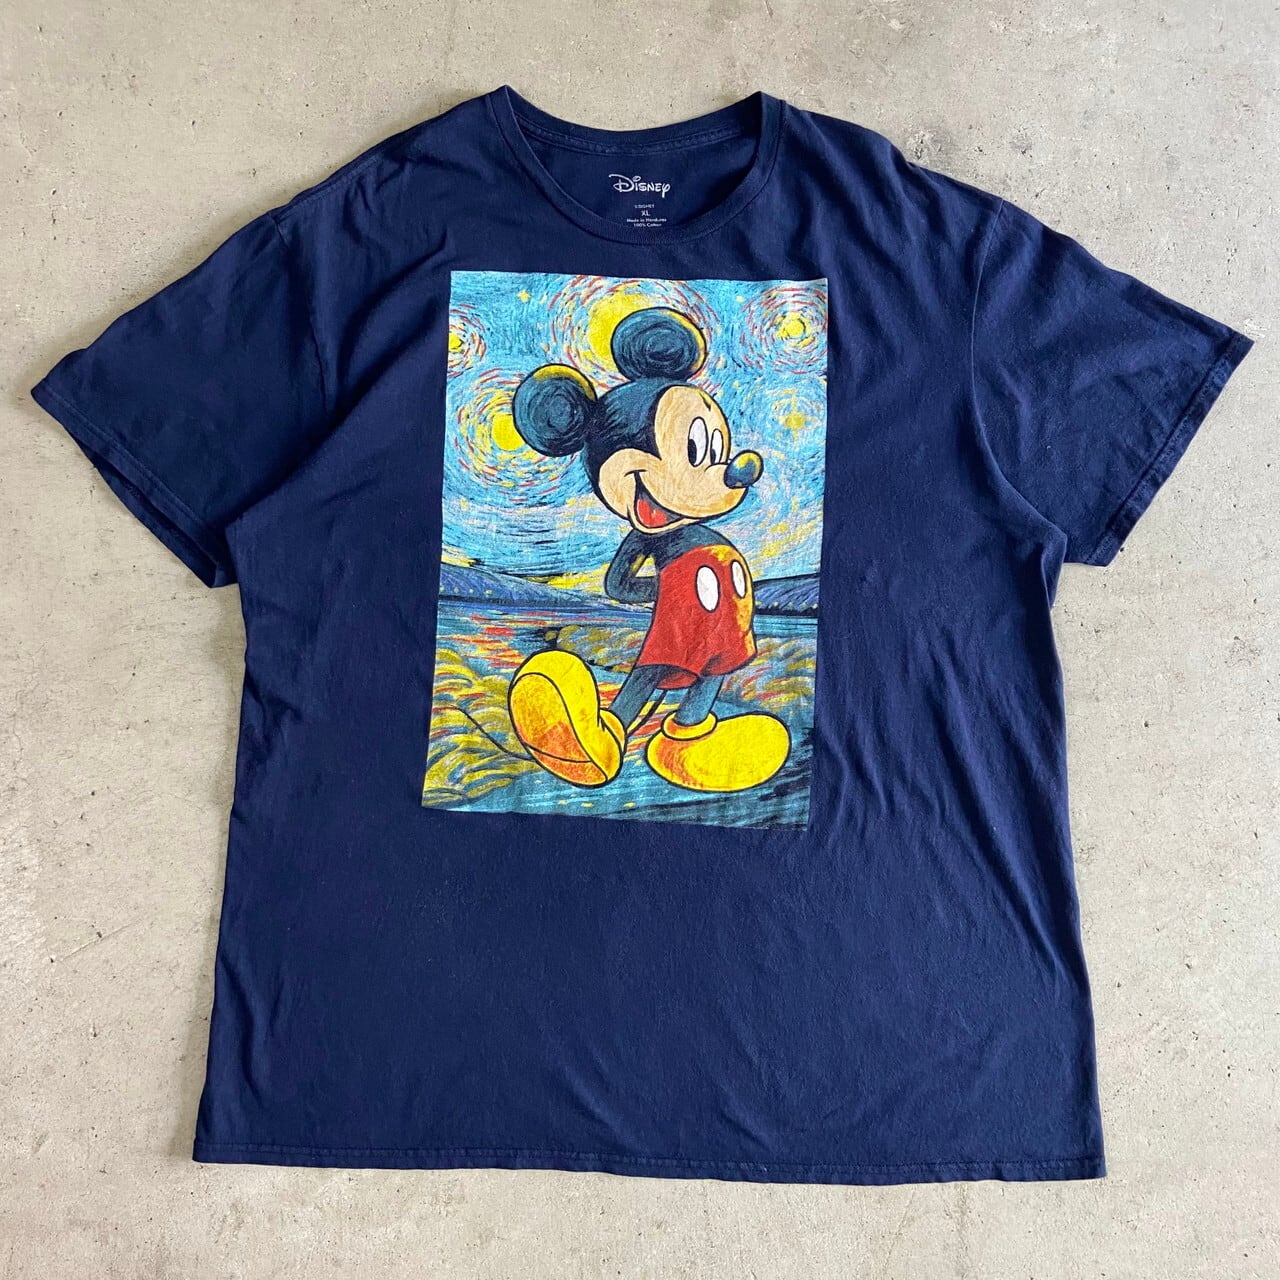 となる ディズニー メンズ Tシャツ トップス Disney Princess Mulan Frame Short Sleeve Graphic T Shirt Black Revida 店 がございま